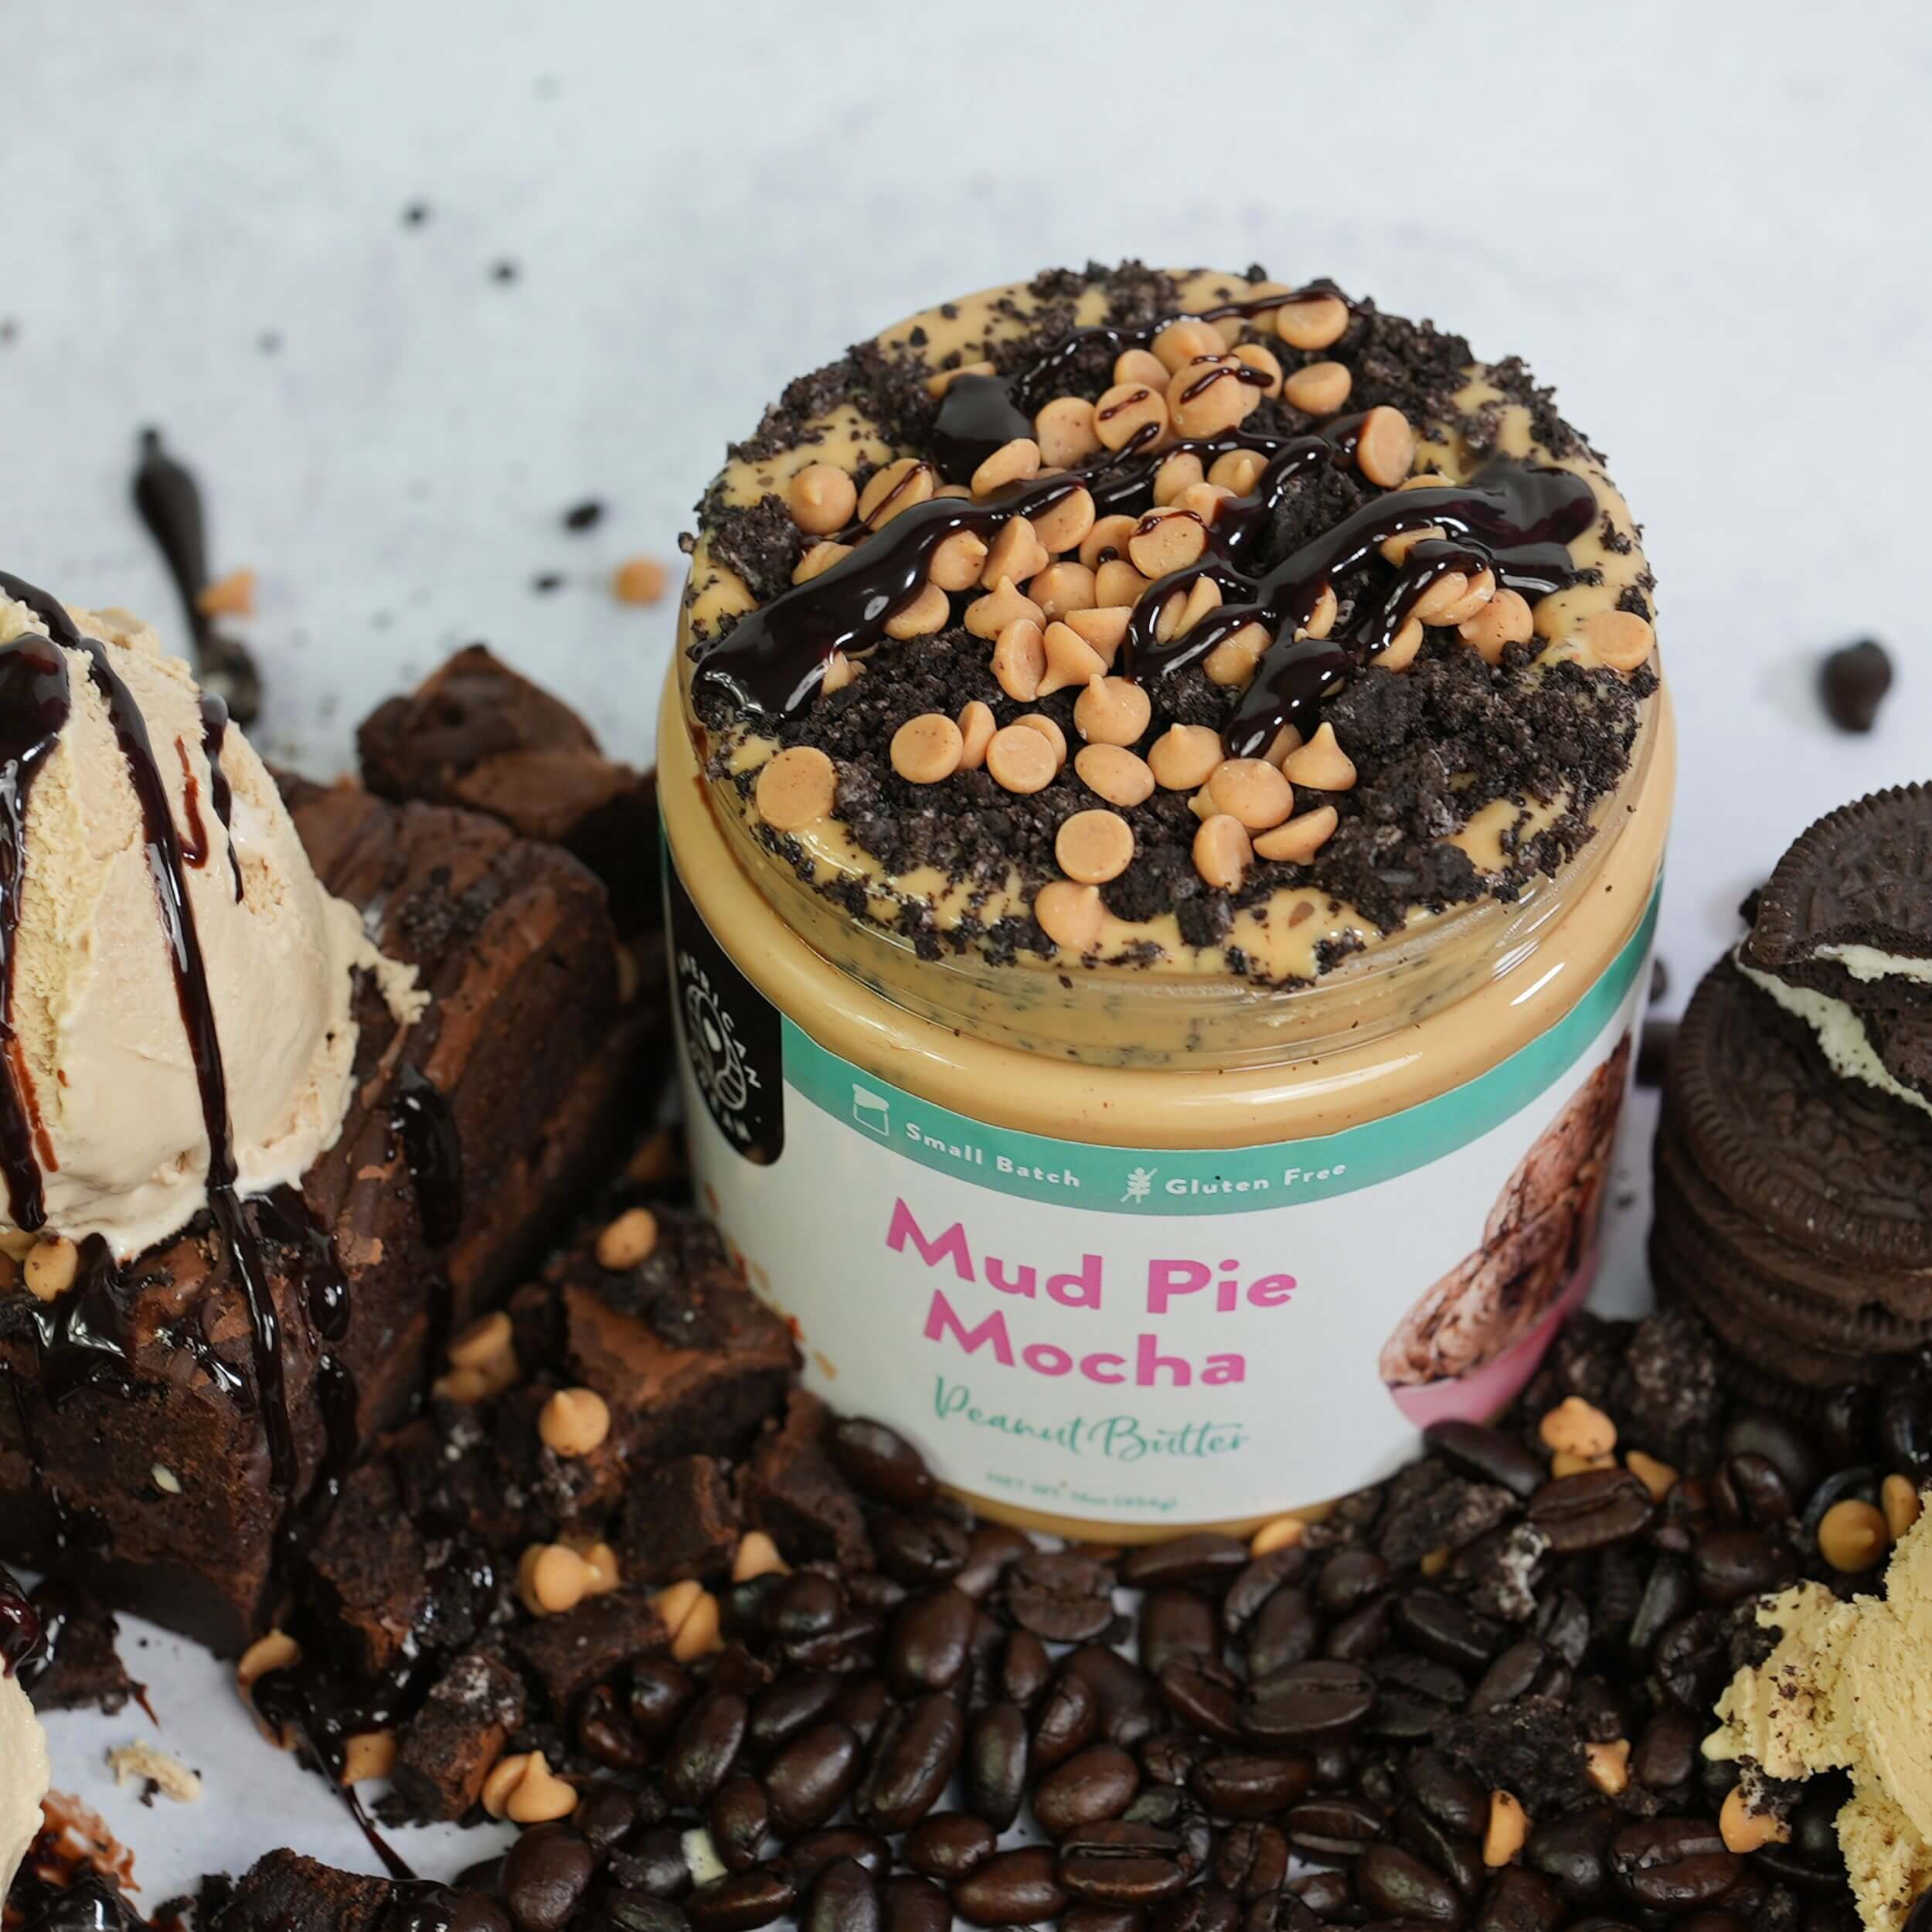 Gluten-Free Mud Pie Mocha Peanut Butter